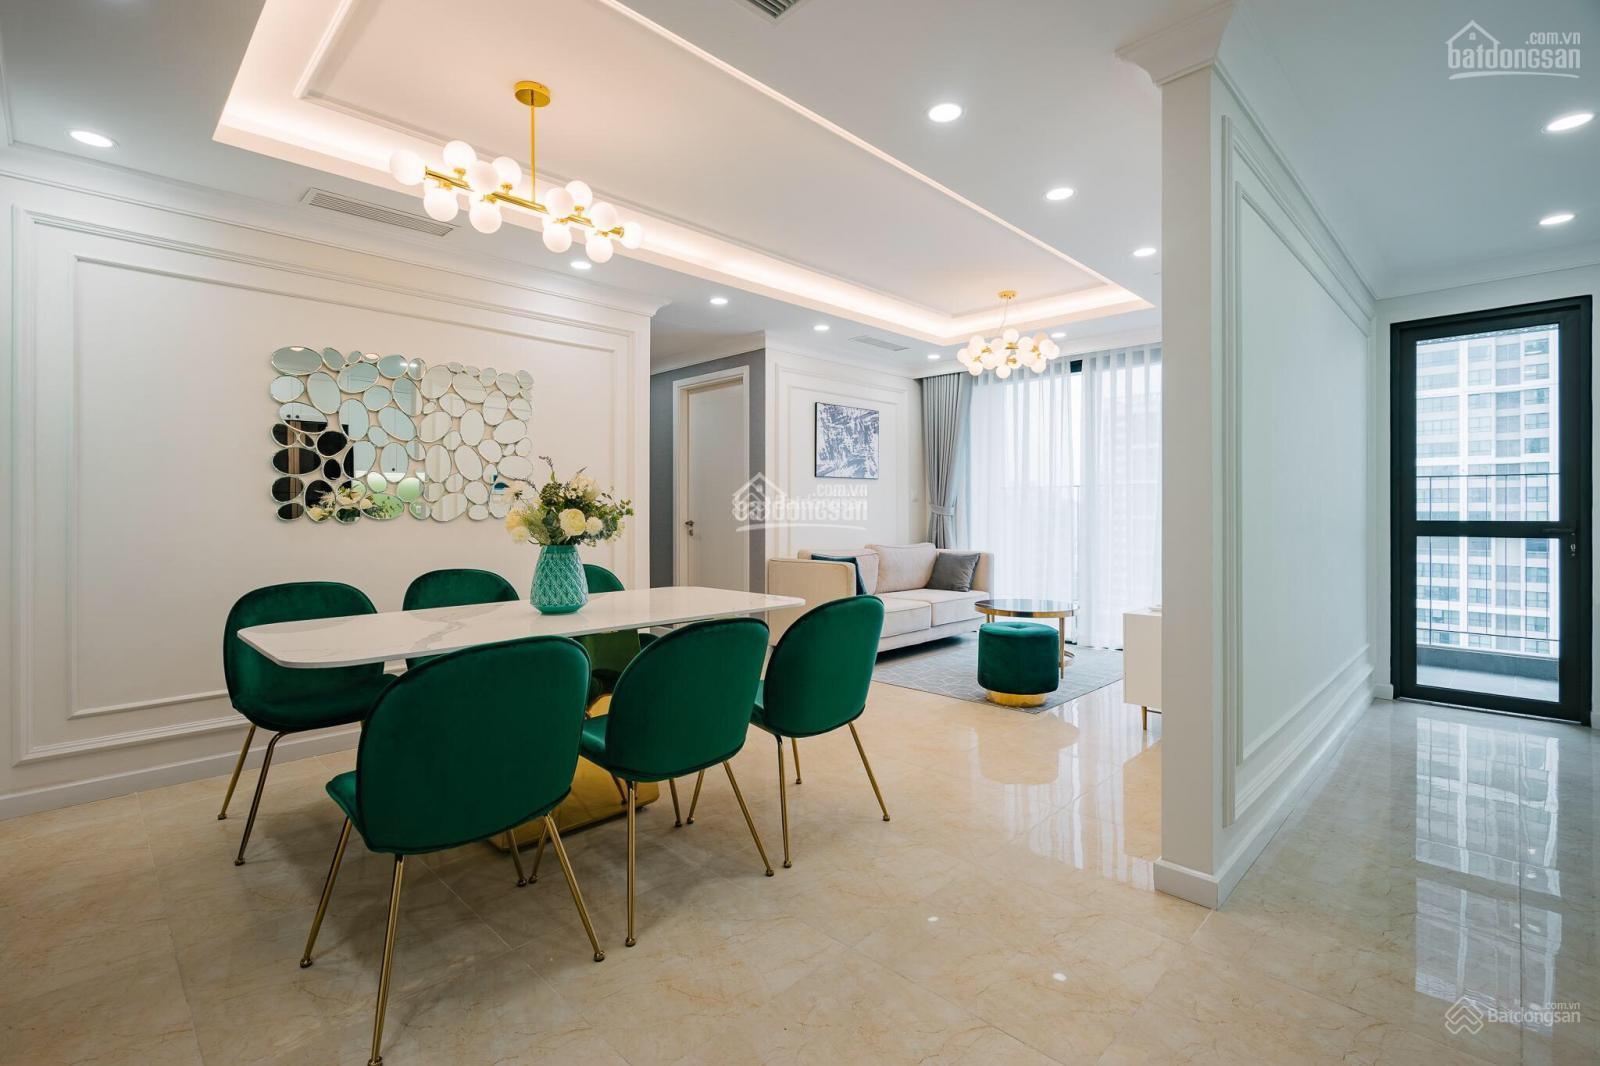 GĐ cho thuê căn hộ 3PN ở chung cư Hà Nội Paragon, Cầu Giấy, giá 16tr/th. LH 0388728675 1028477